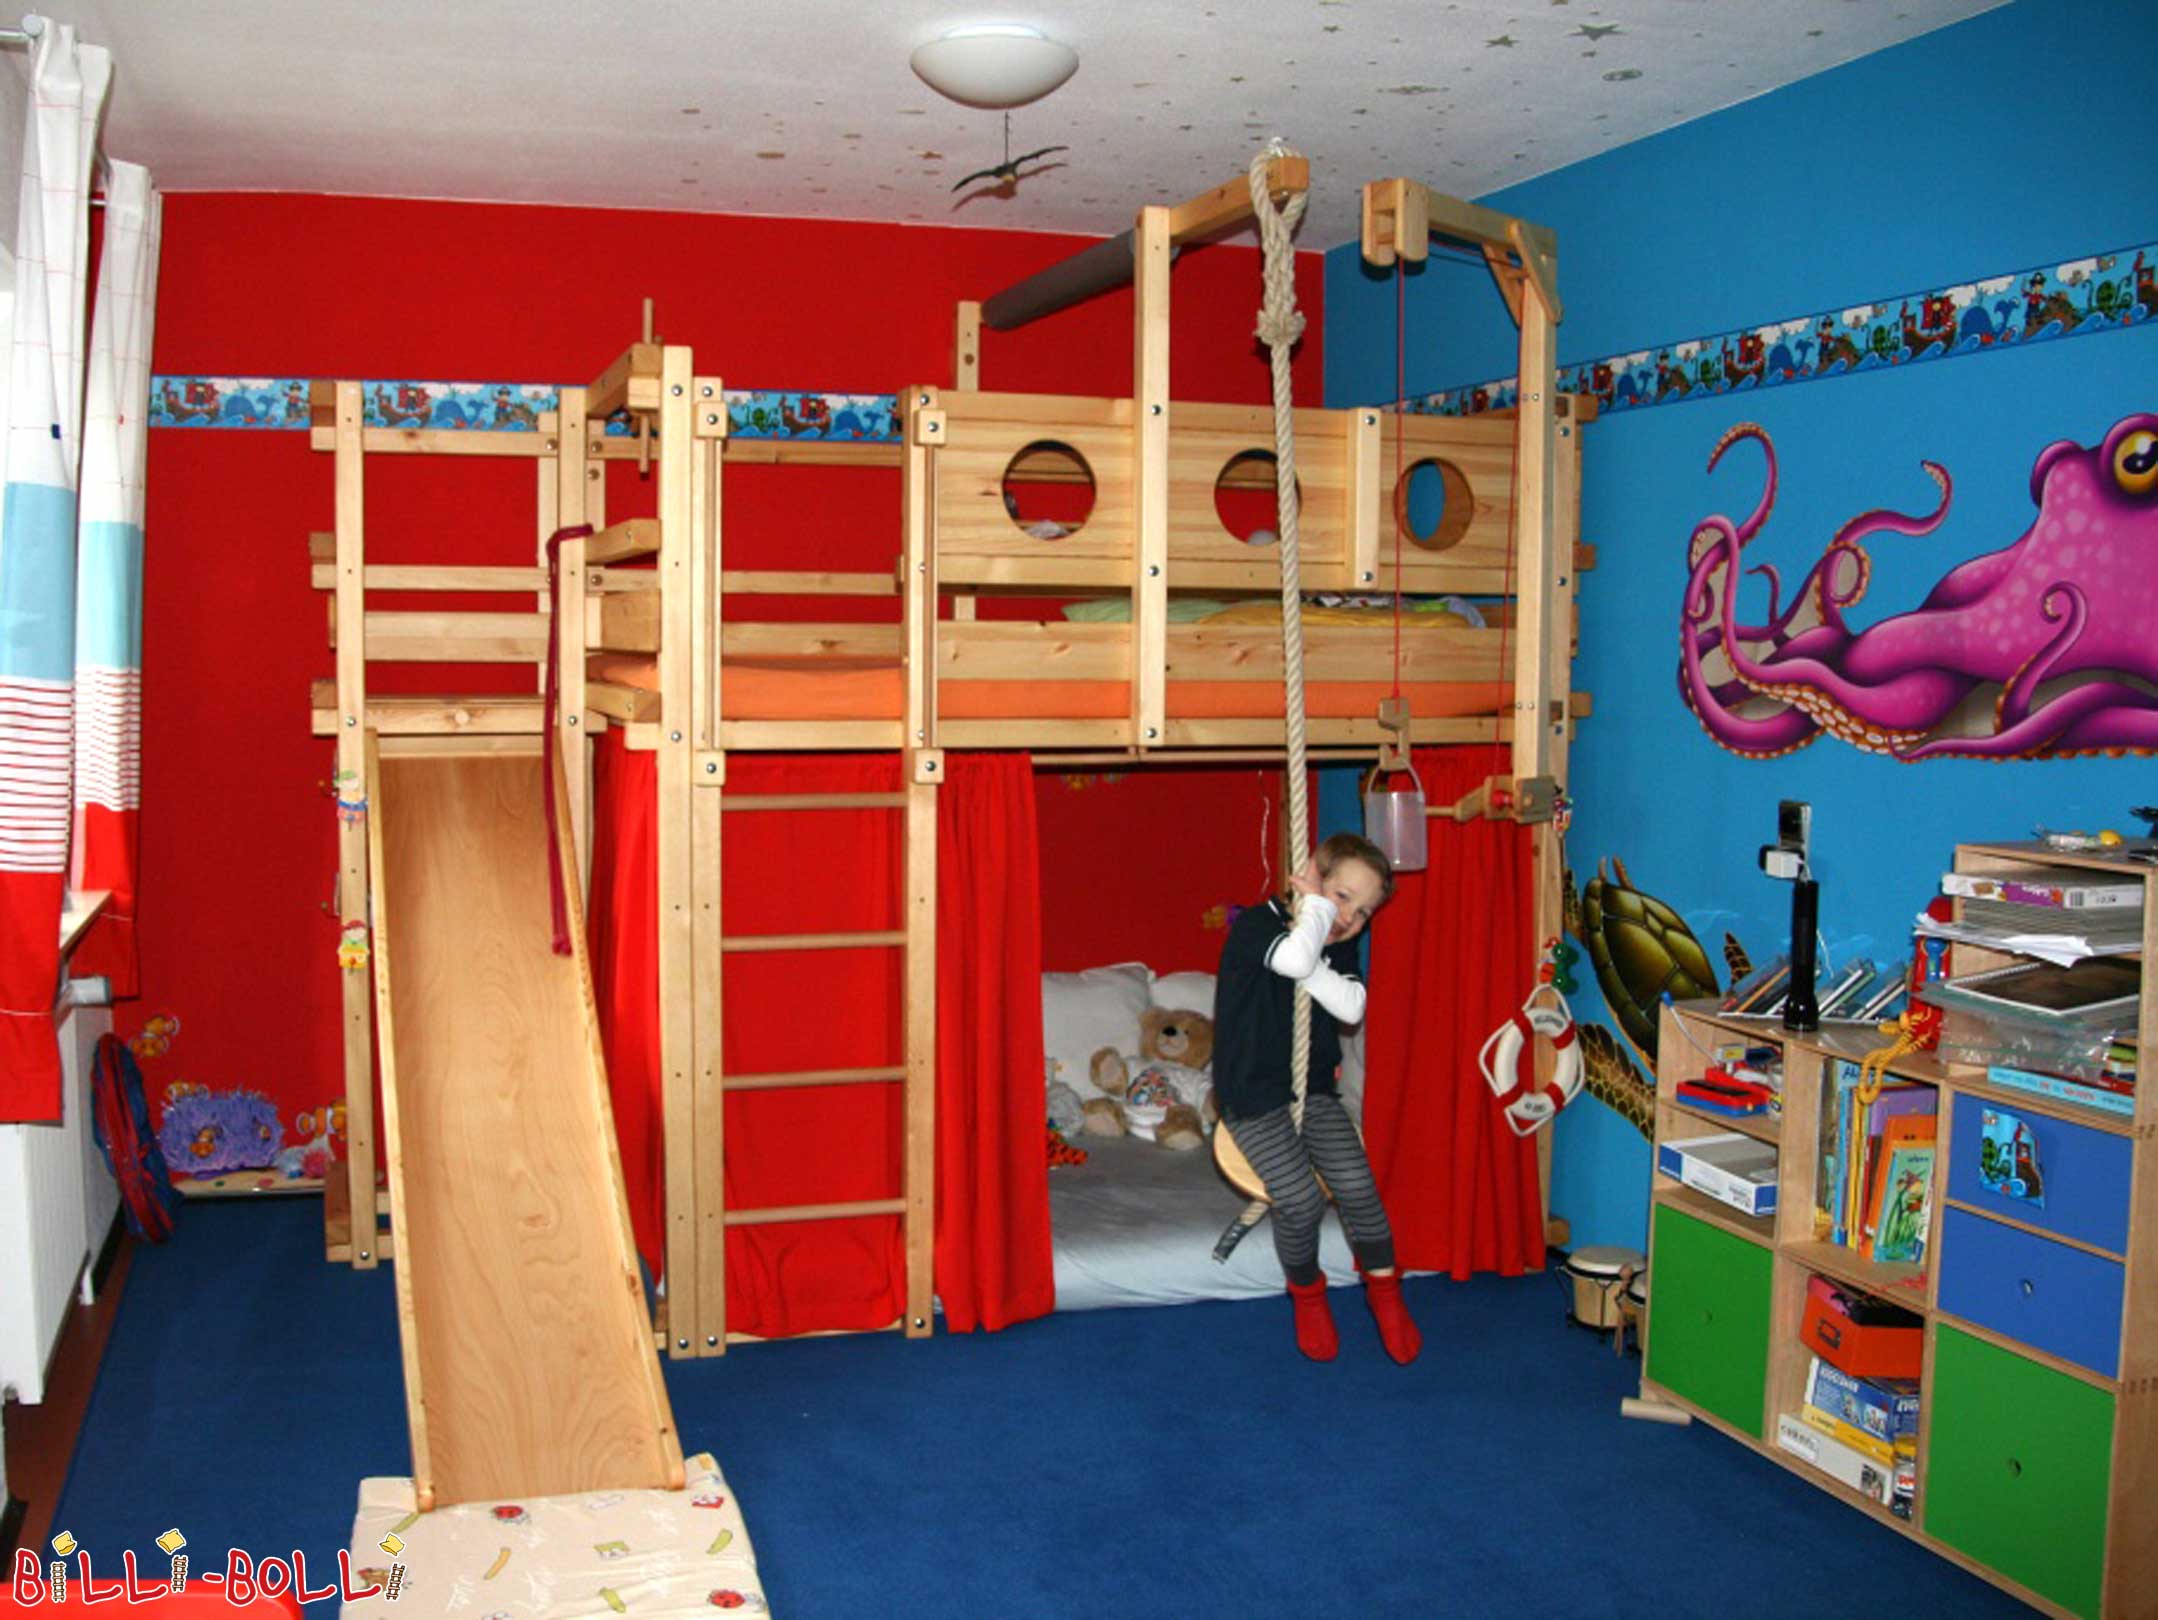 Piraten-Hochbett im Meer-Kinderzimmer mit Rutsche, Schaukel und Bullaugen (Hochbett mitwachsend)